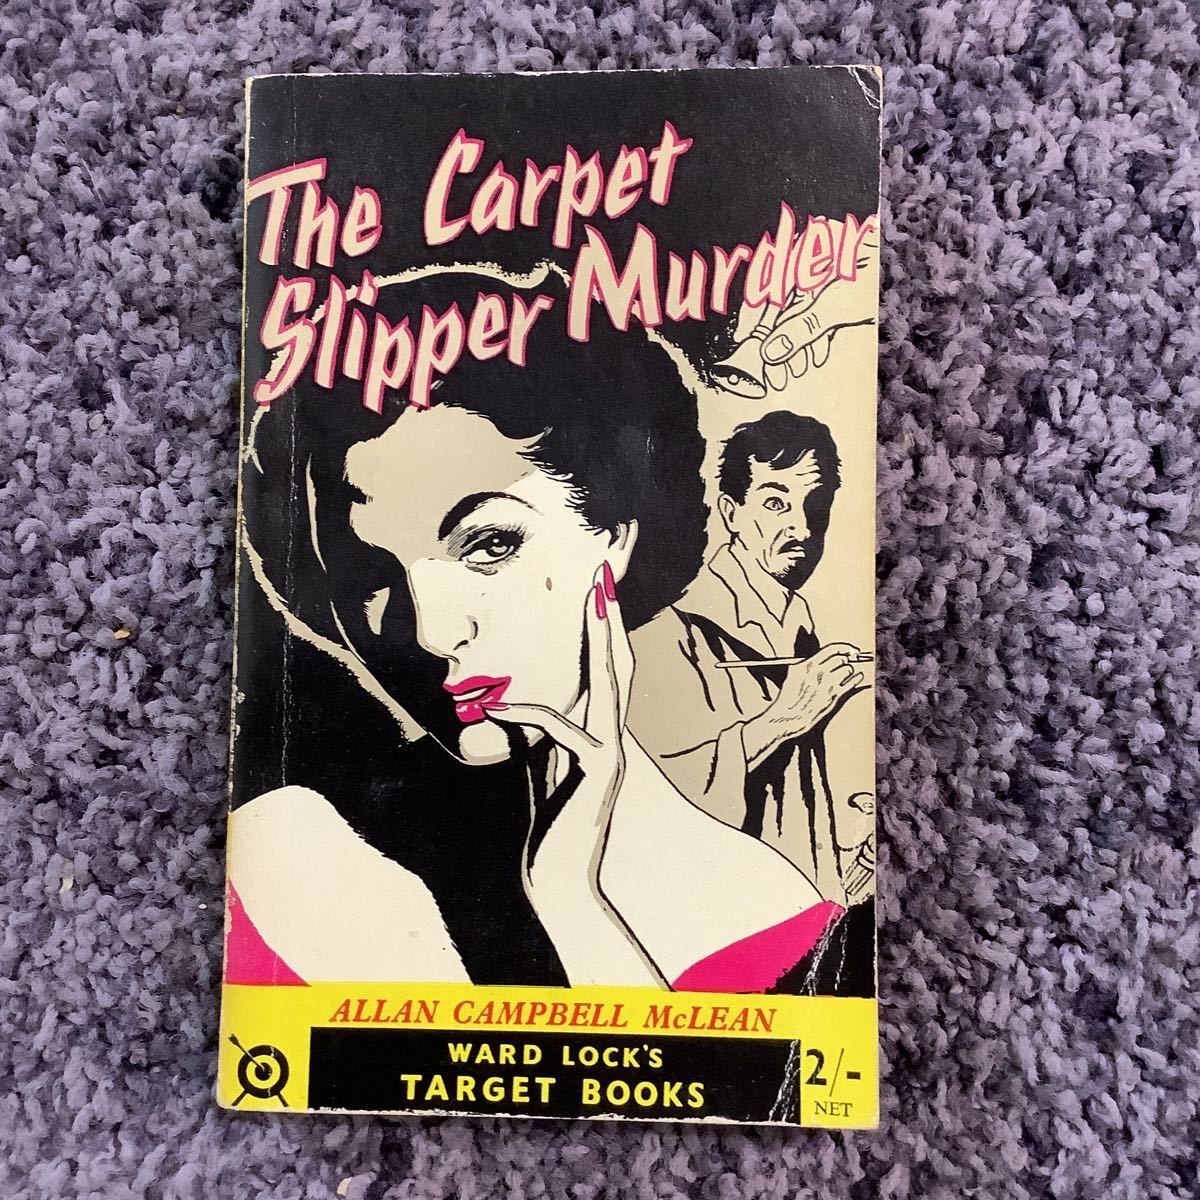 状態悪し The Carpet Slipper Murder ALLAN CAMPBELL McLEAN WARD LOCK’S TARGET BOOK 2/- NET